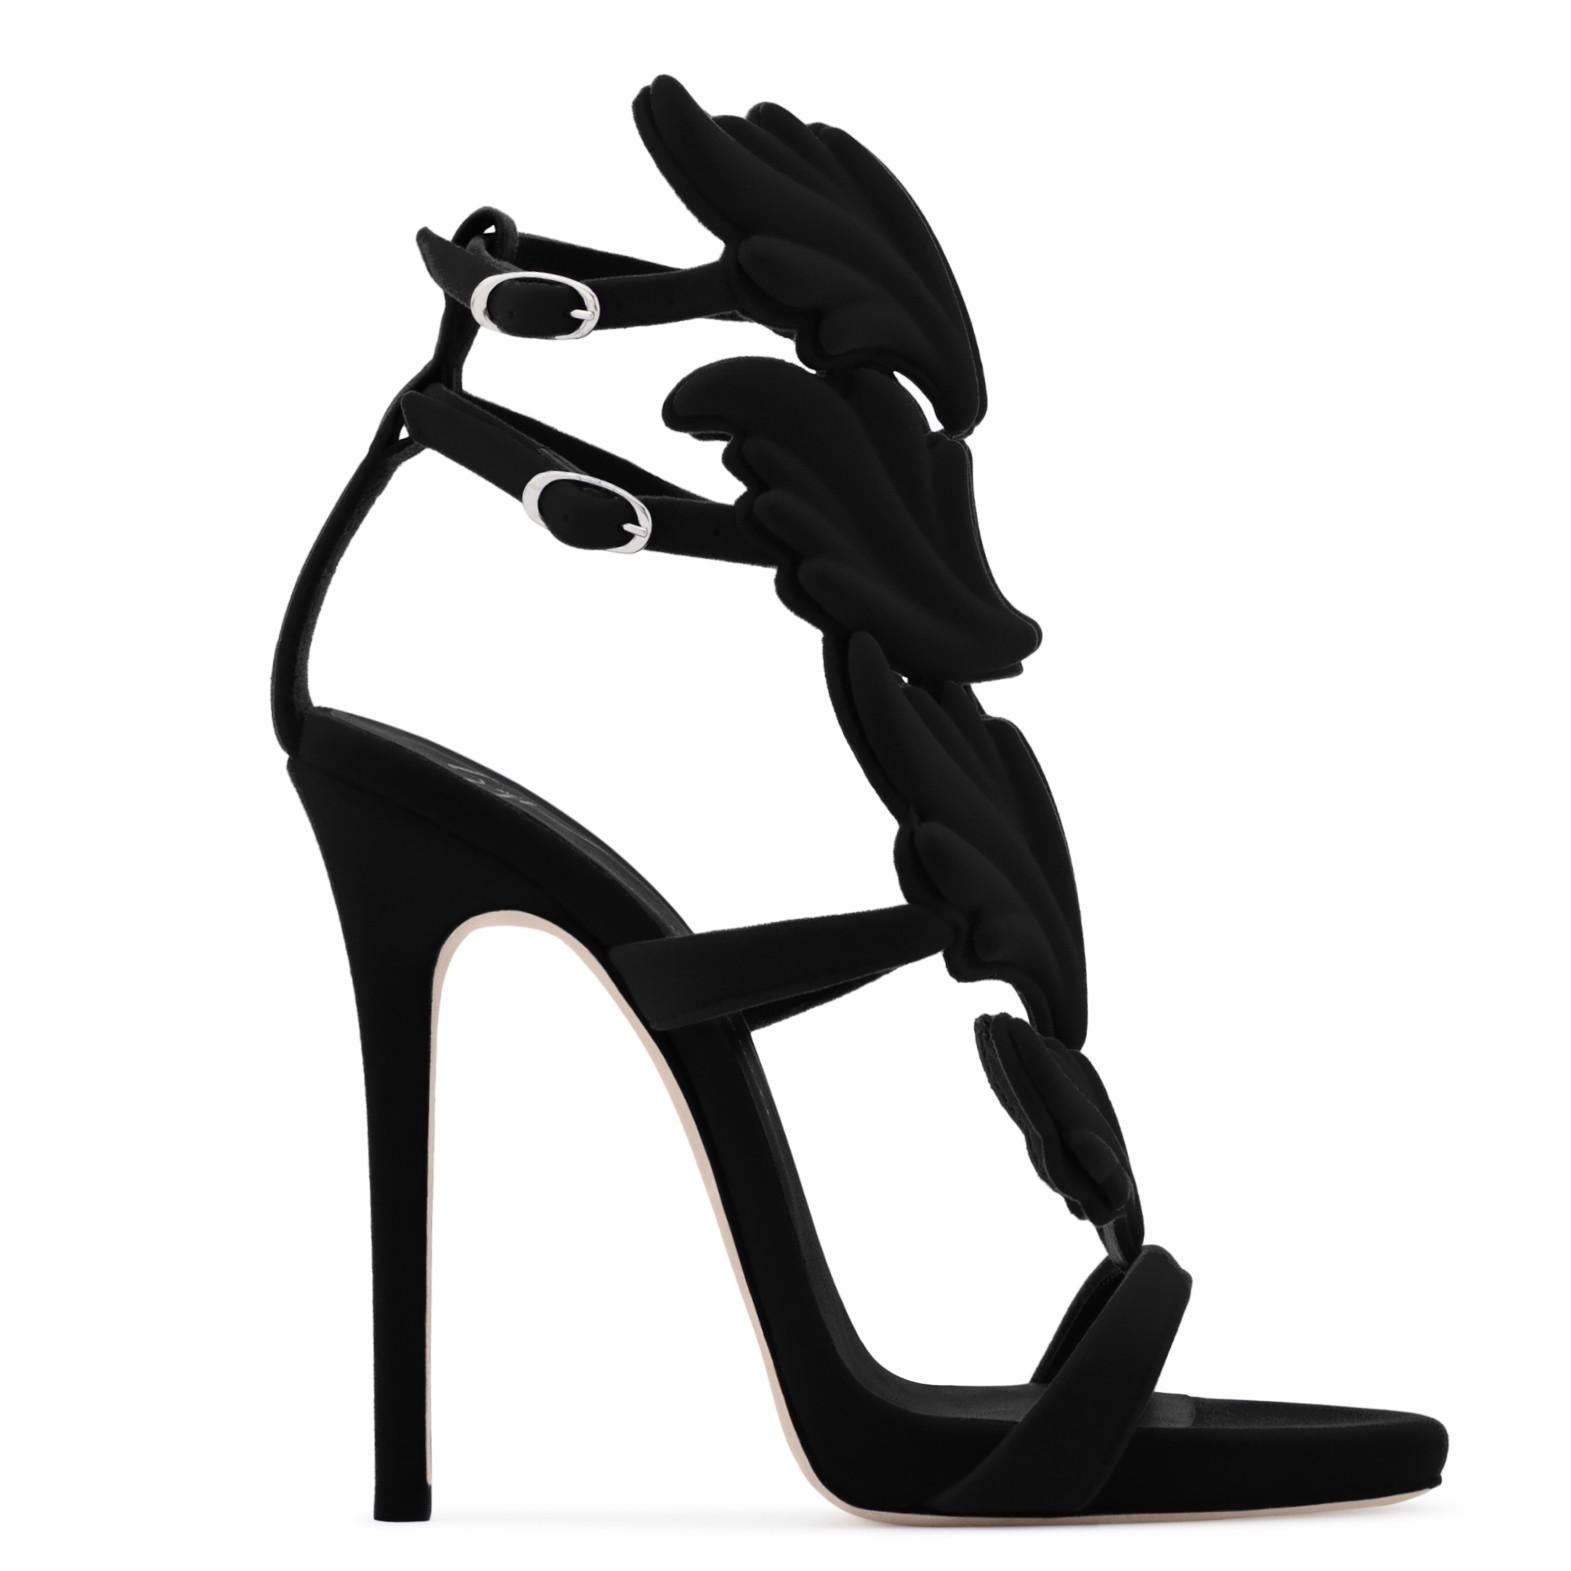 Women's Giuseppe Zanotti NEW Black Suede Velvet Evening Sandals Heels in Box